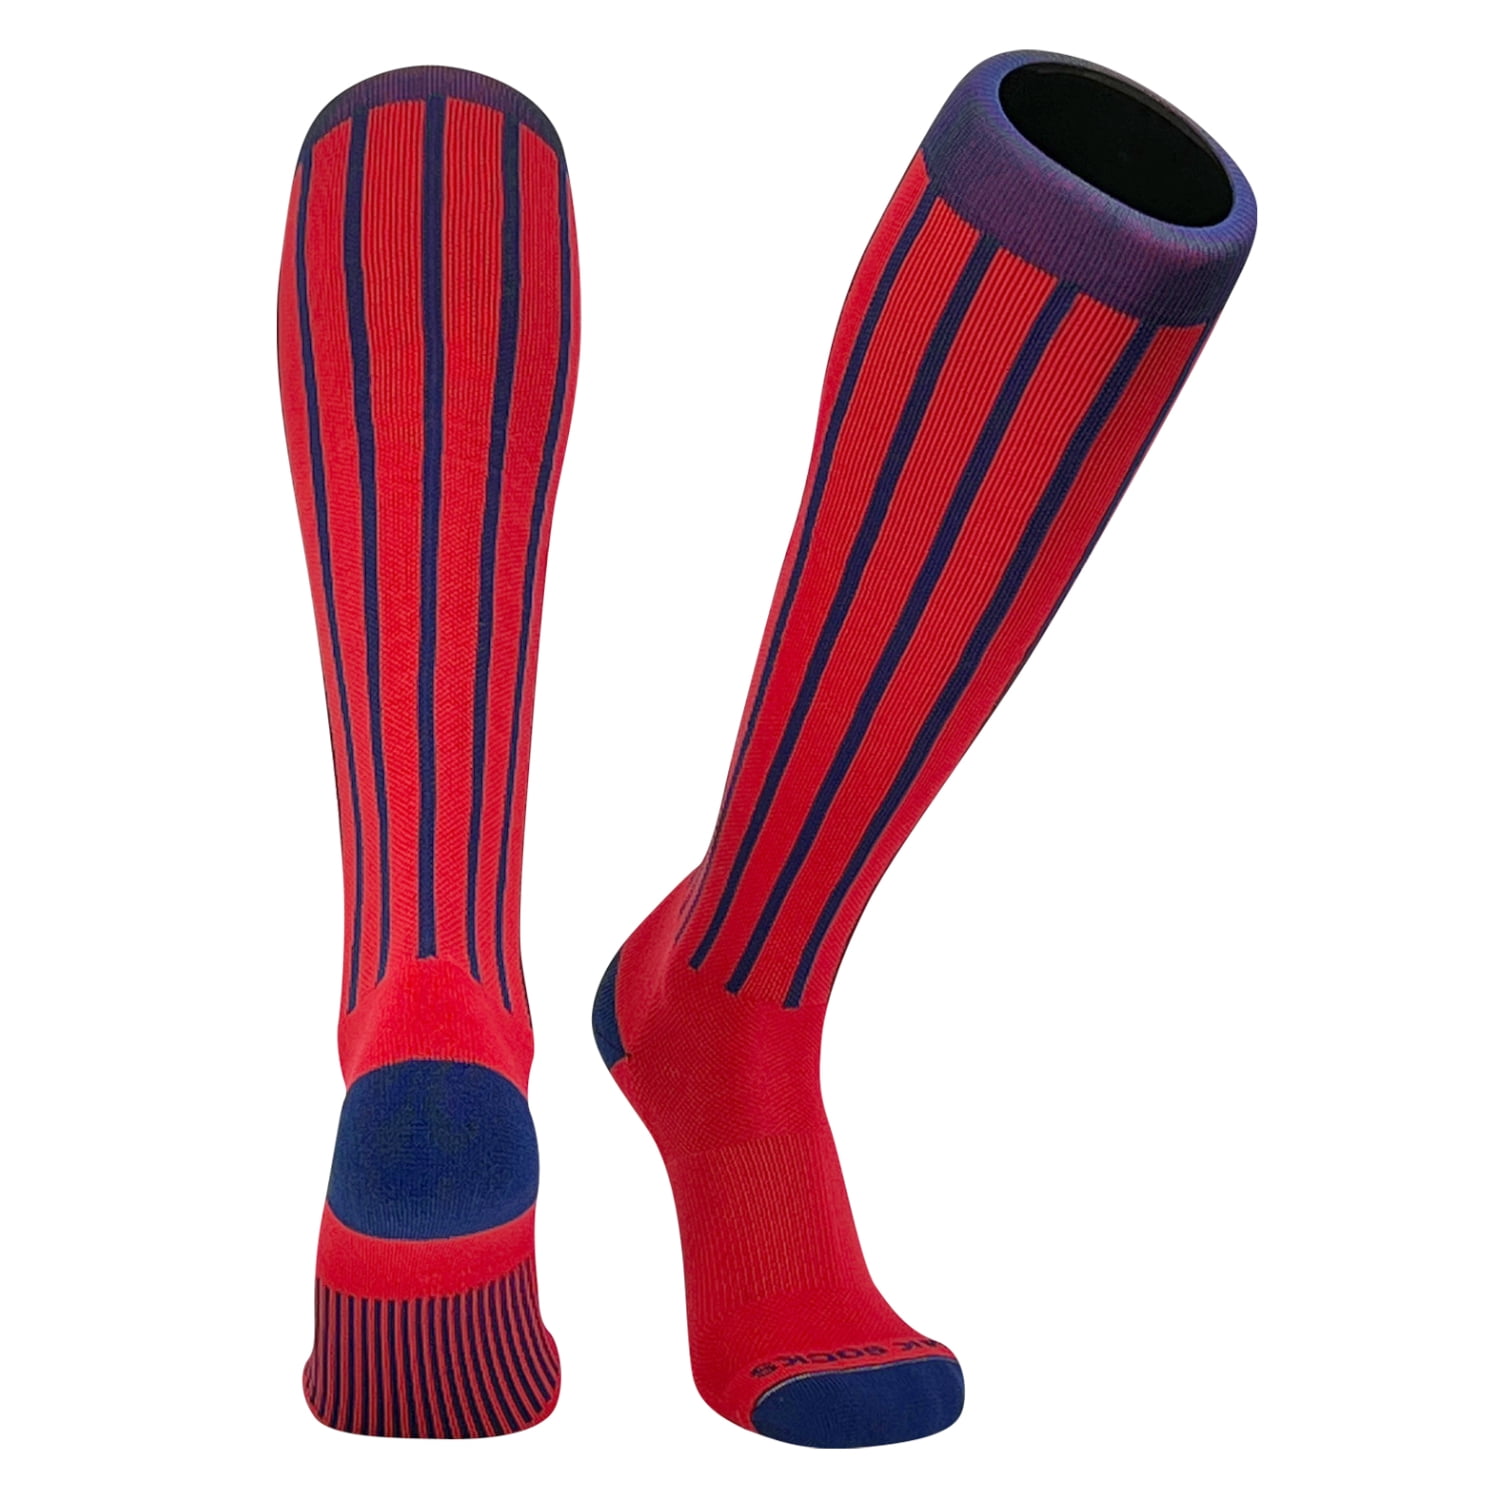 MK Socks Baseball Softball Pinstripe Knee high Socks - Navy, Red (L ...